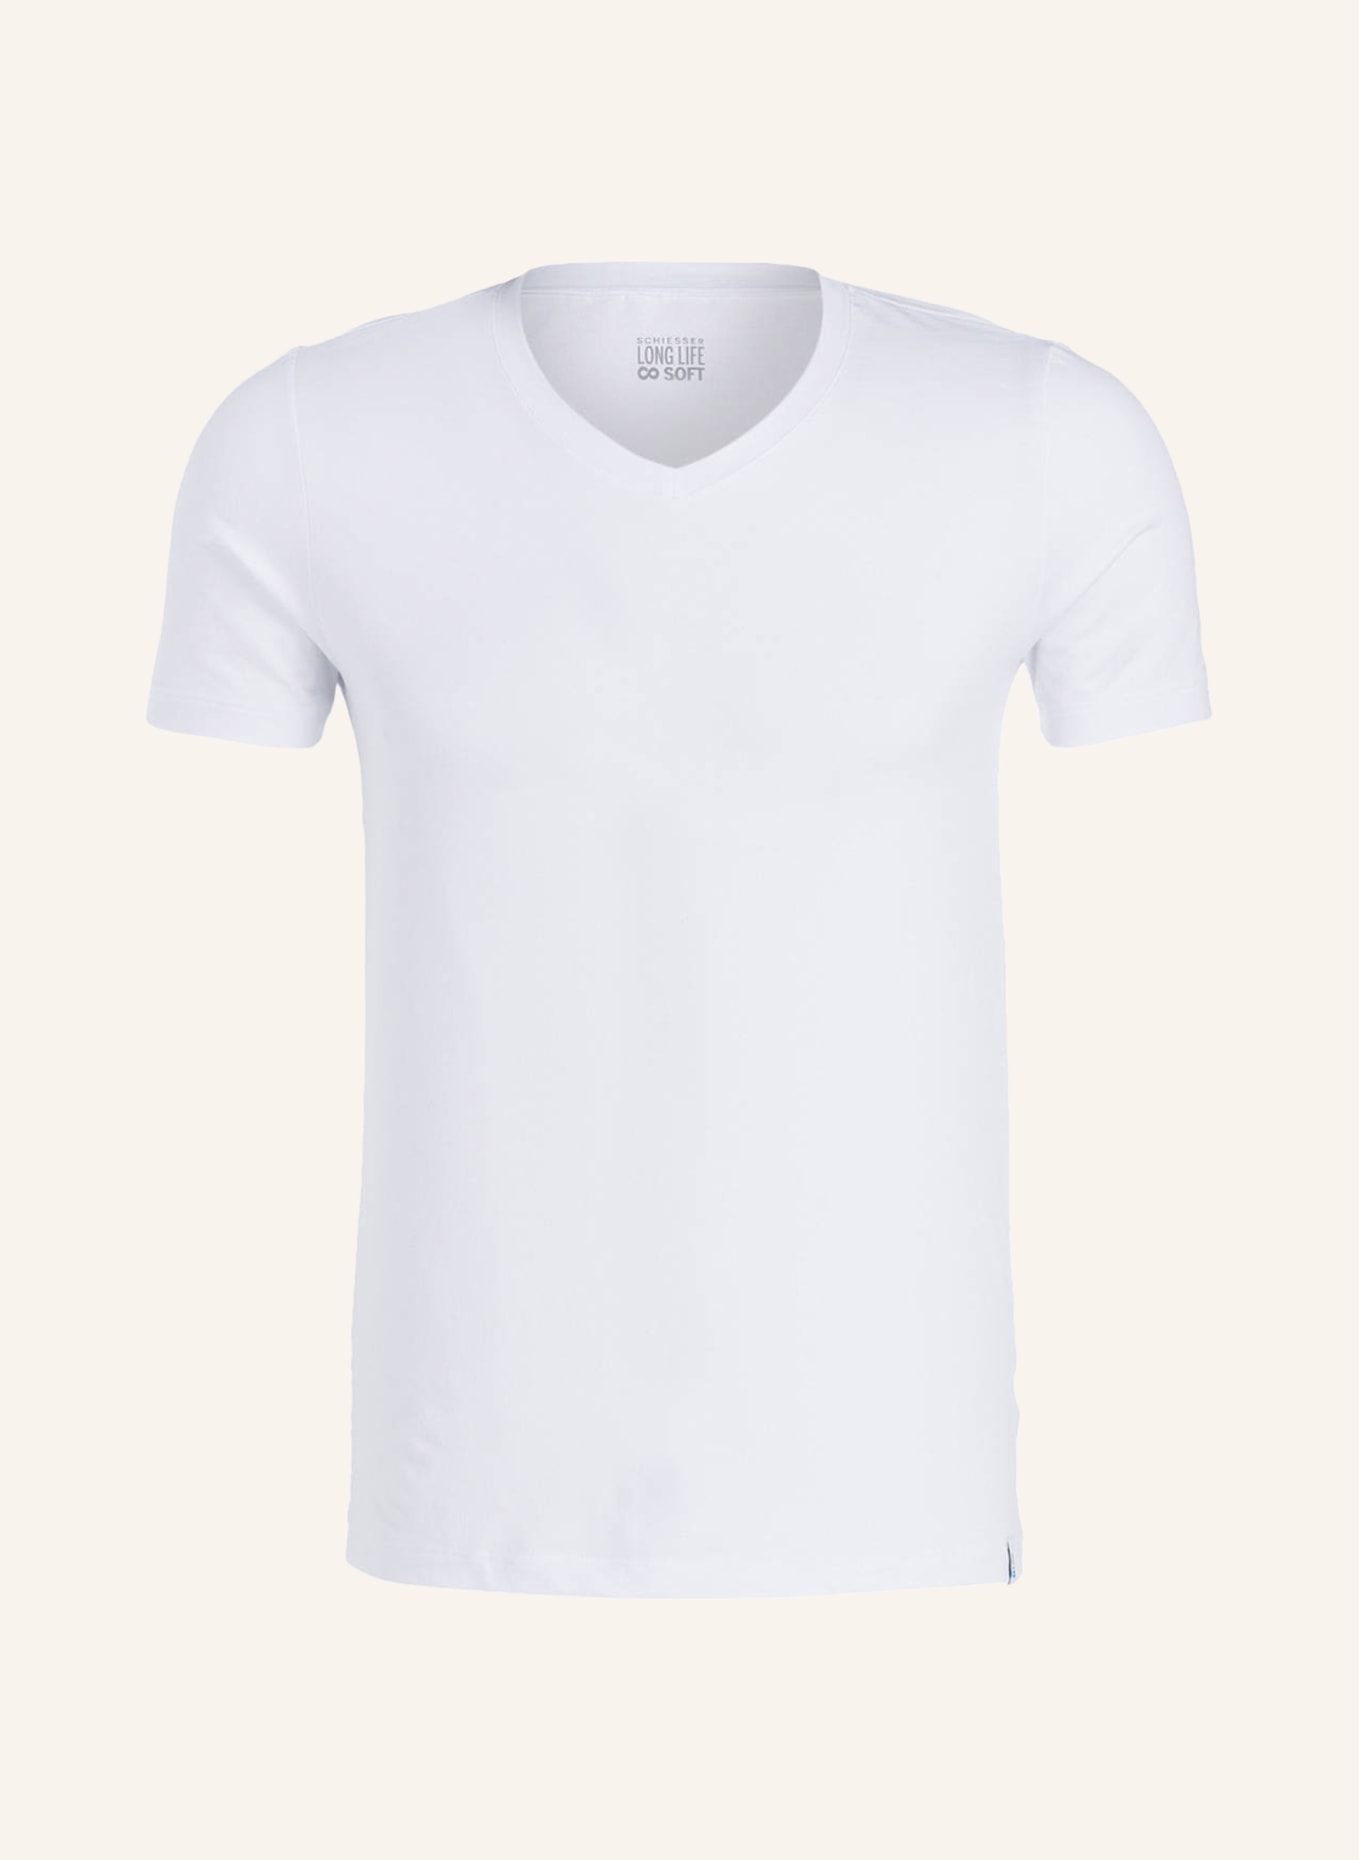 SCHIESSER V-Shirt LONG LIFE SOFT, Farbe: WEISS (Bild 1)